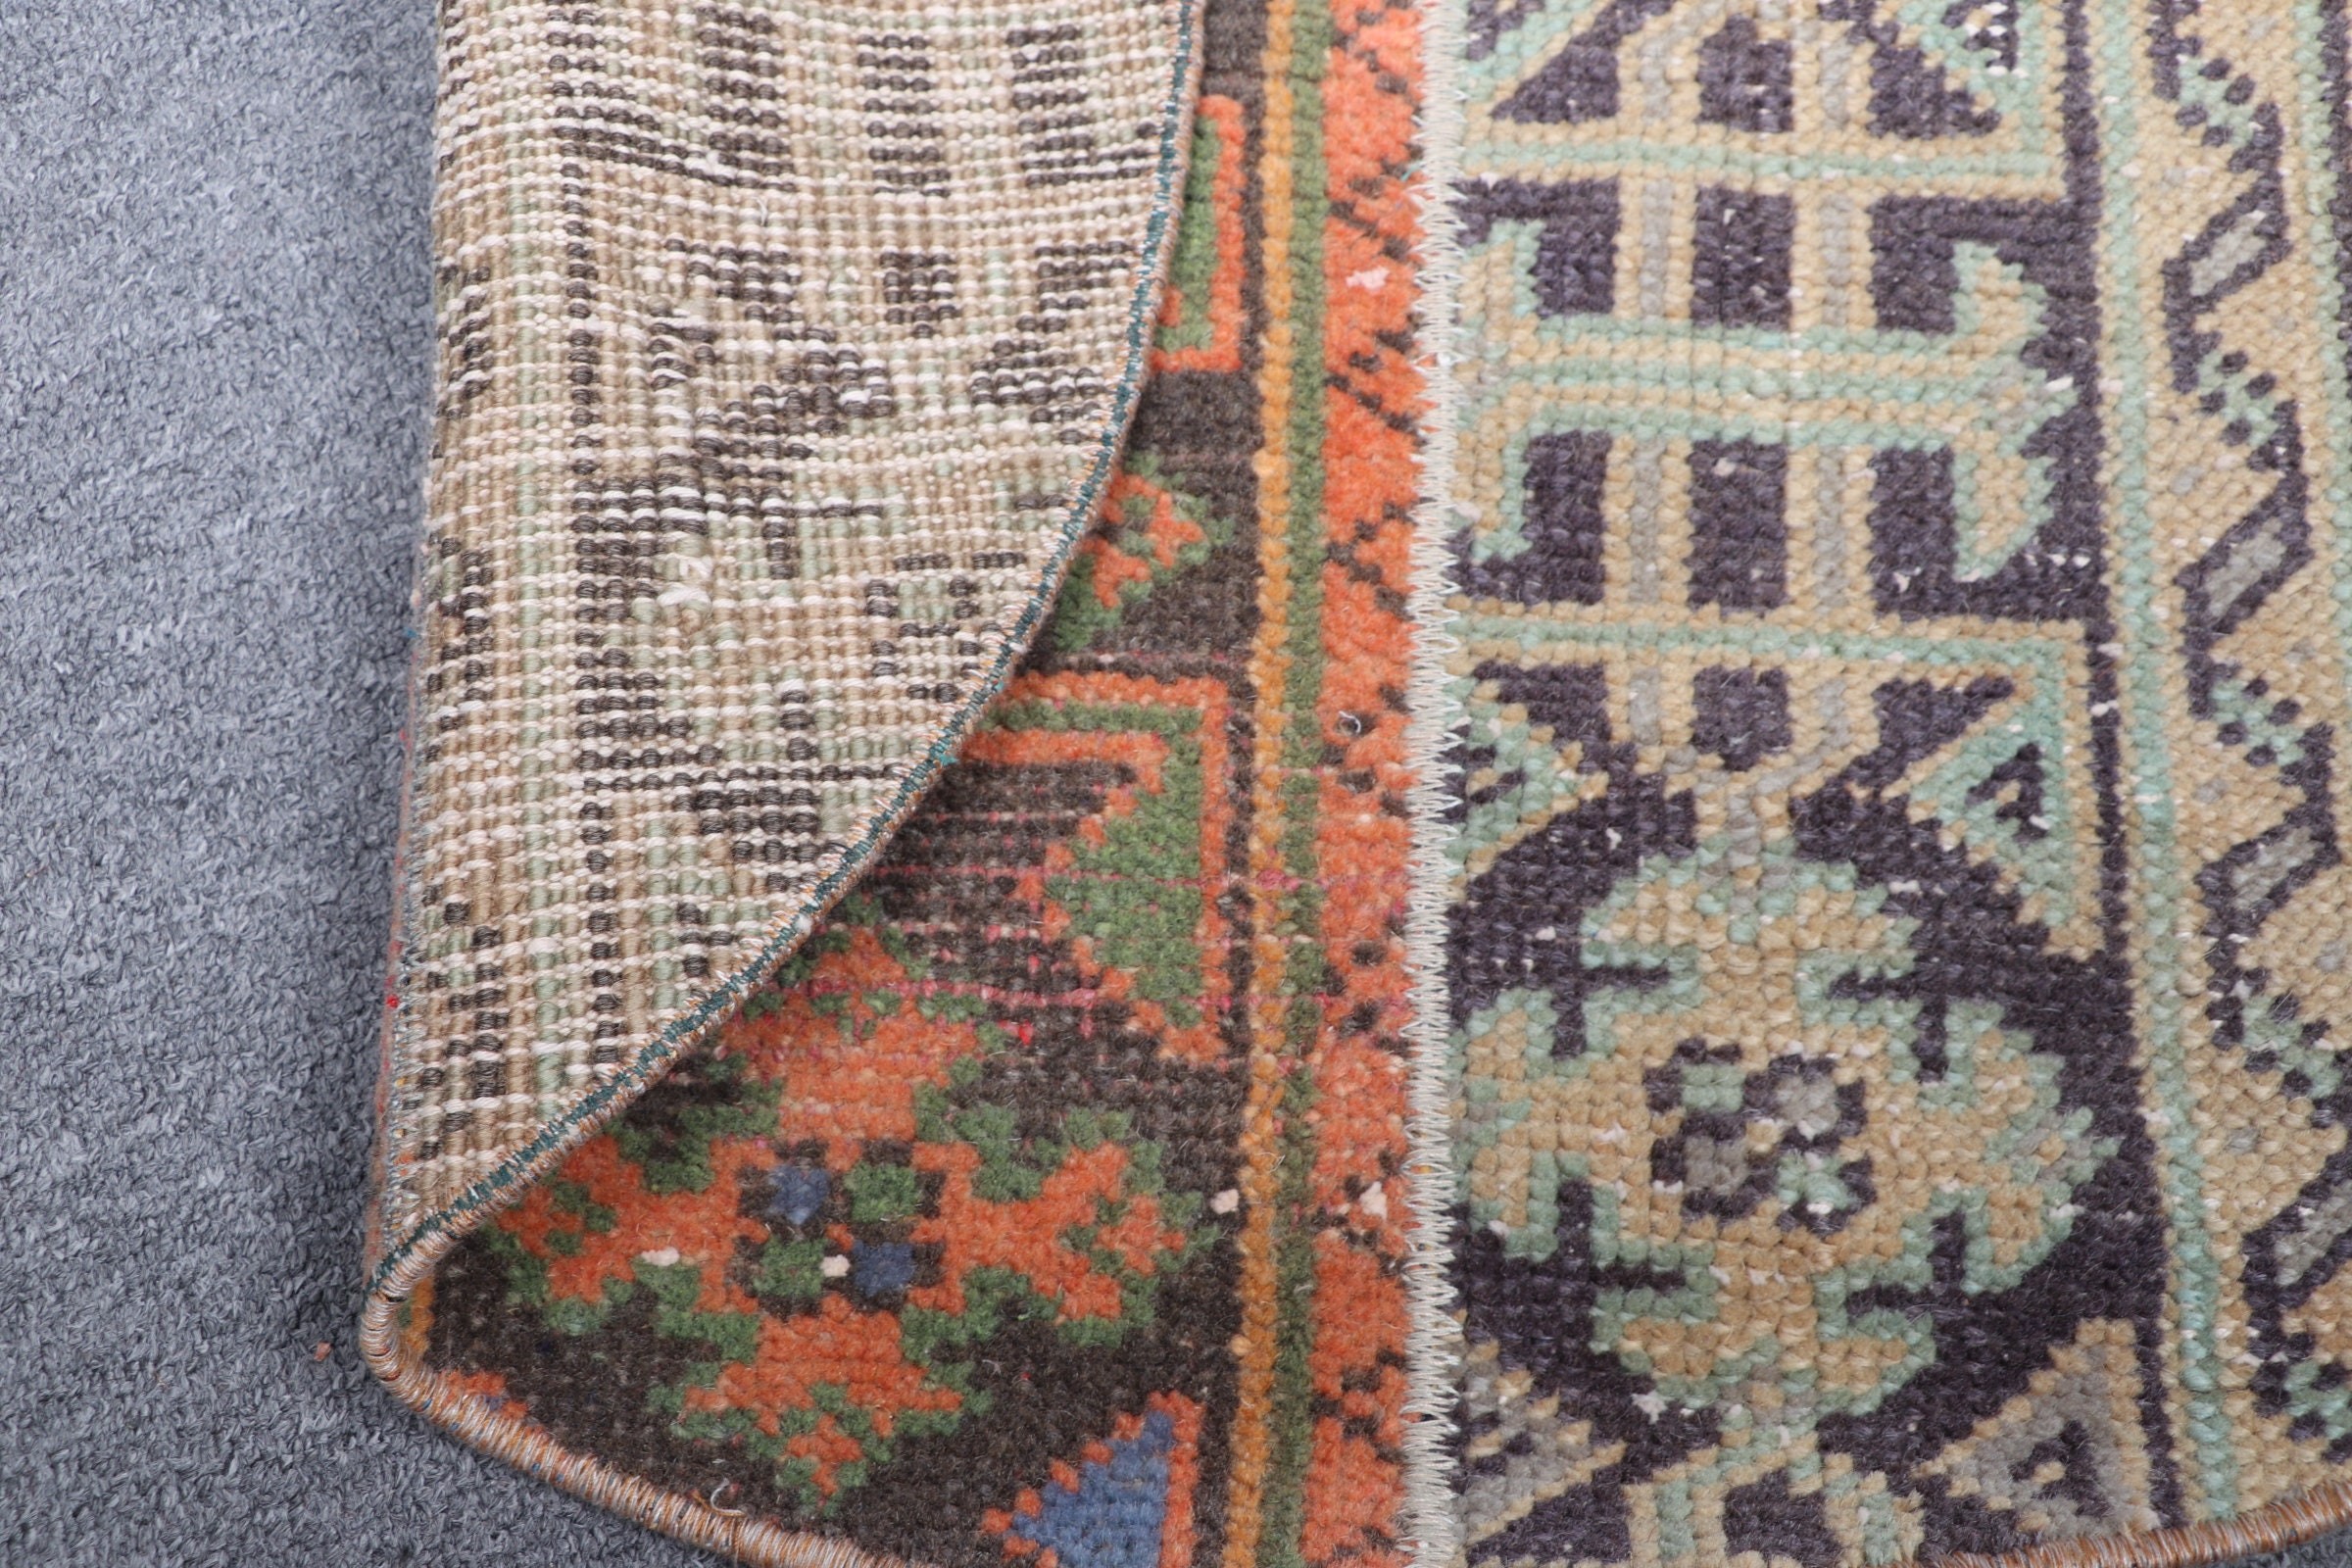 Door Mat Rugs, Turkish Rug, Moroccan Rug, Vintage Rugs, 2.4x2.4 ft Small Rugs, Wall Hanging Rug, Pale Rug, Blue Floor Rugs, Oriental Rugs